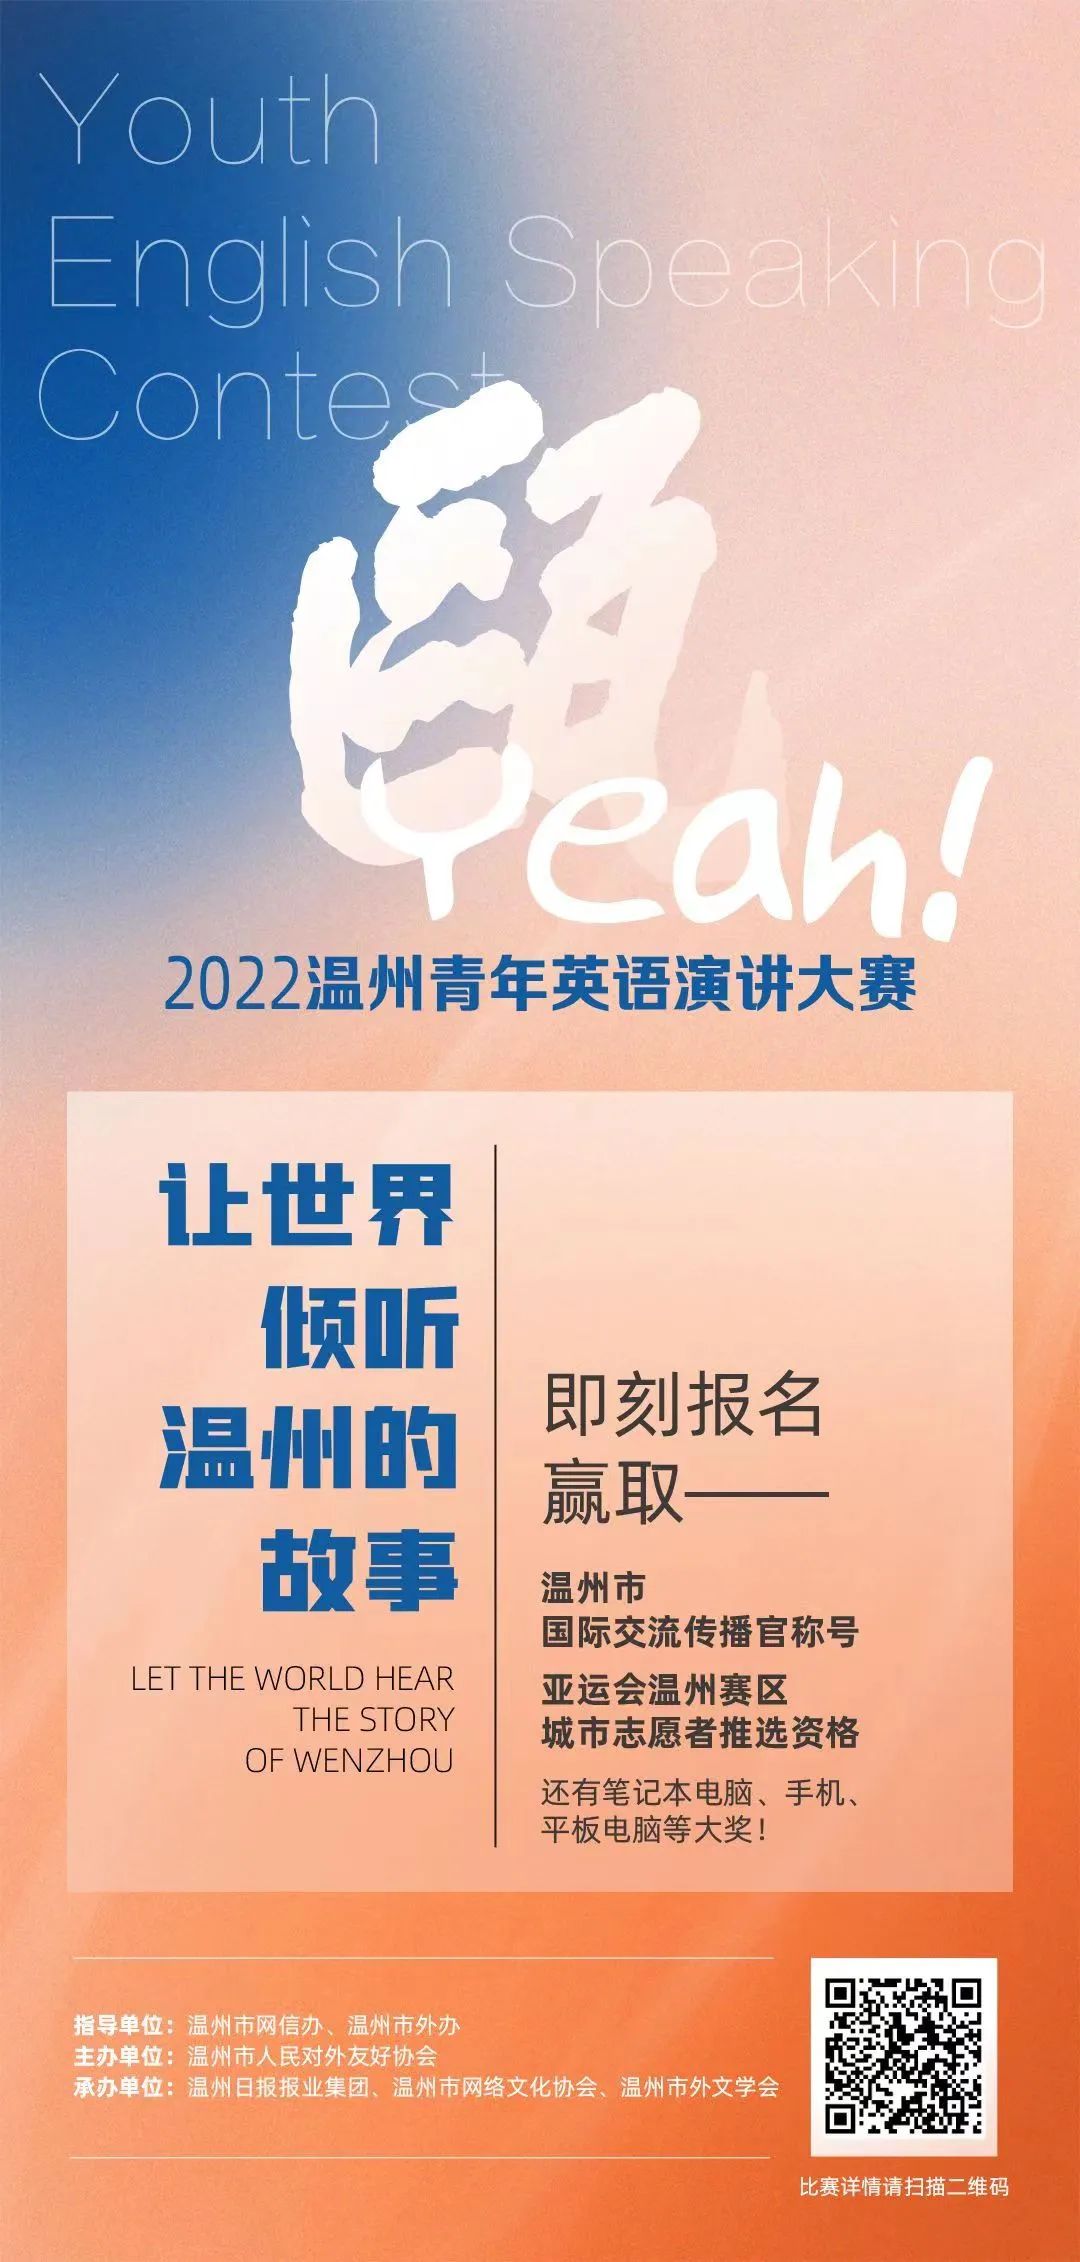 瓯Yeah! 2022温州青年英语演讲大赛邀你来参赛